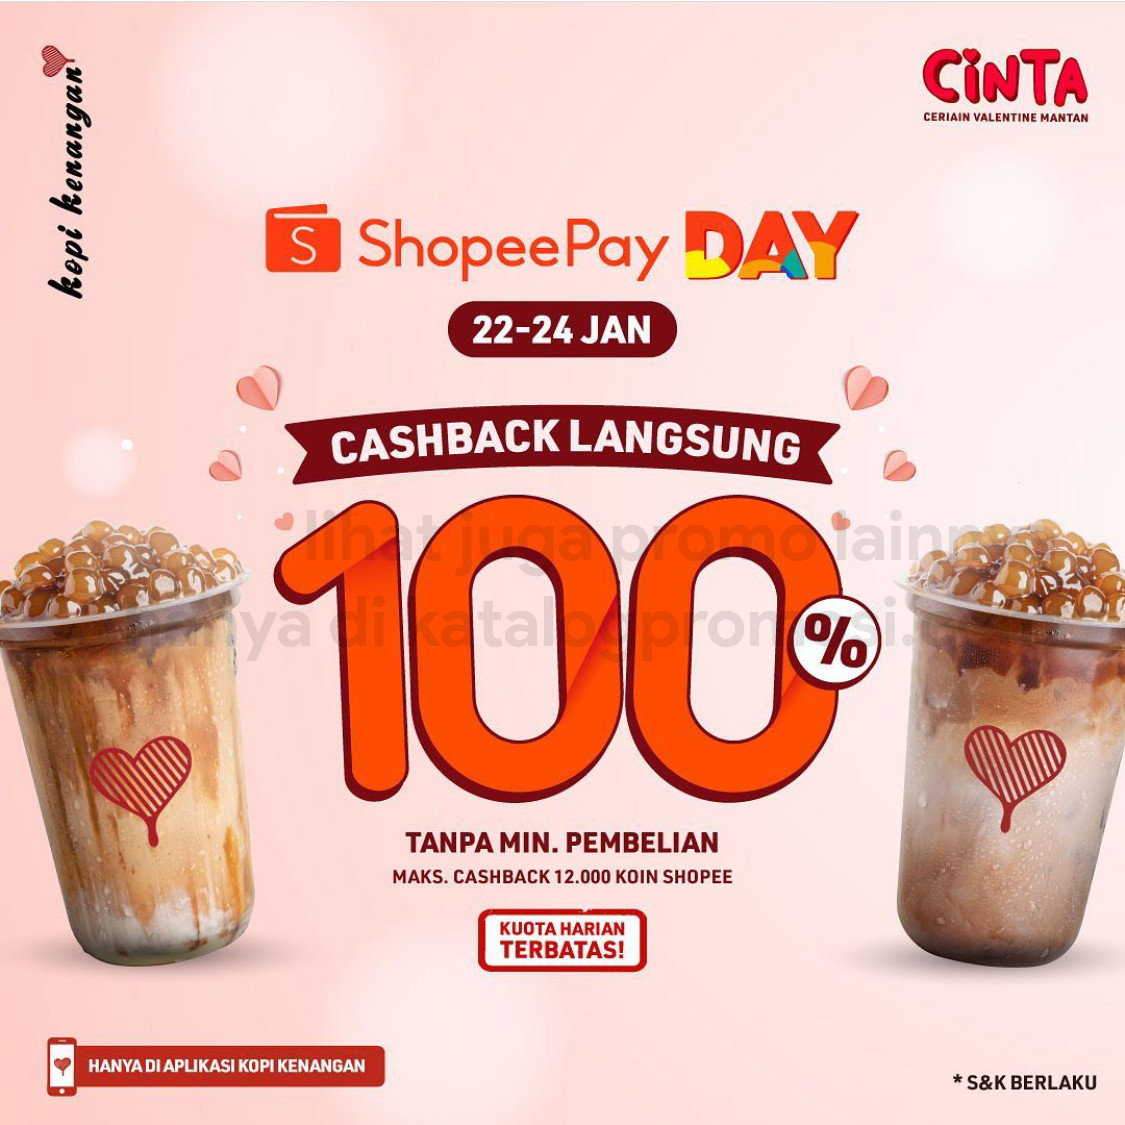 KOPI KENANGAN Promo SHOPEEPAY DAY - Cashback Langsung 100%* untuk Transaksi dengan ShopeePay via Aplikasi Kopi Kenangan